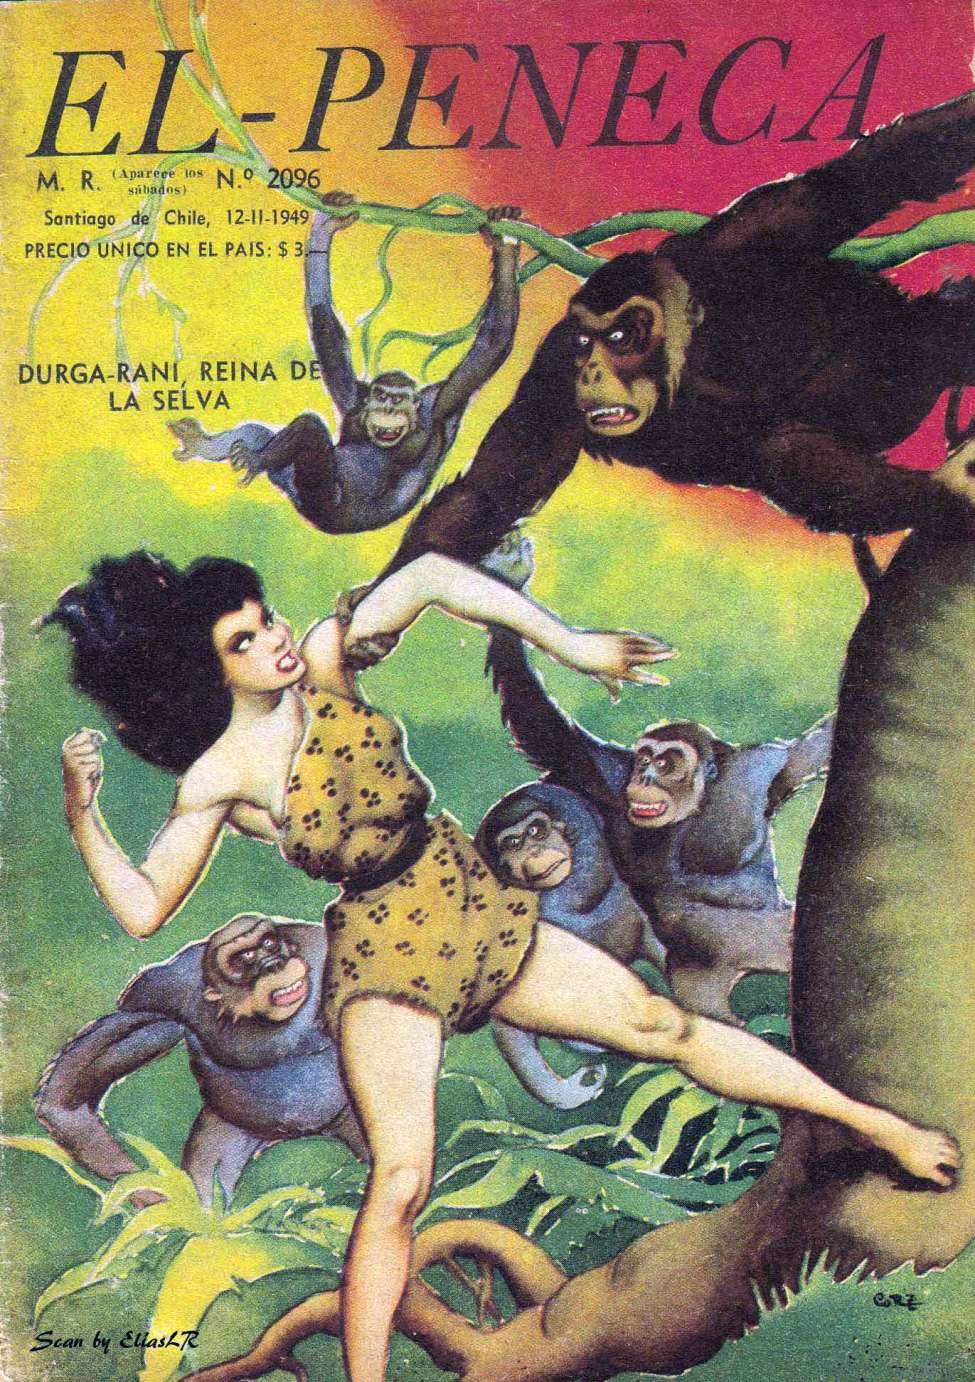 Book Cover For Durga-Rani El Peneca 2096